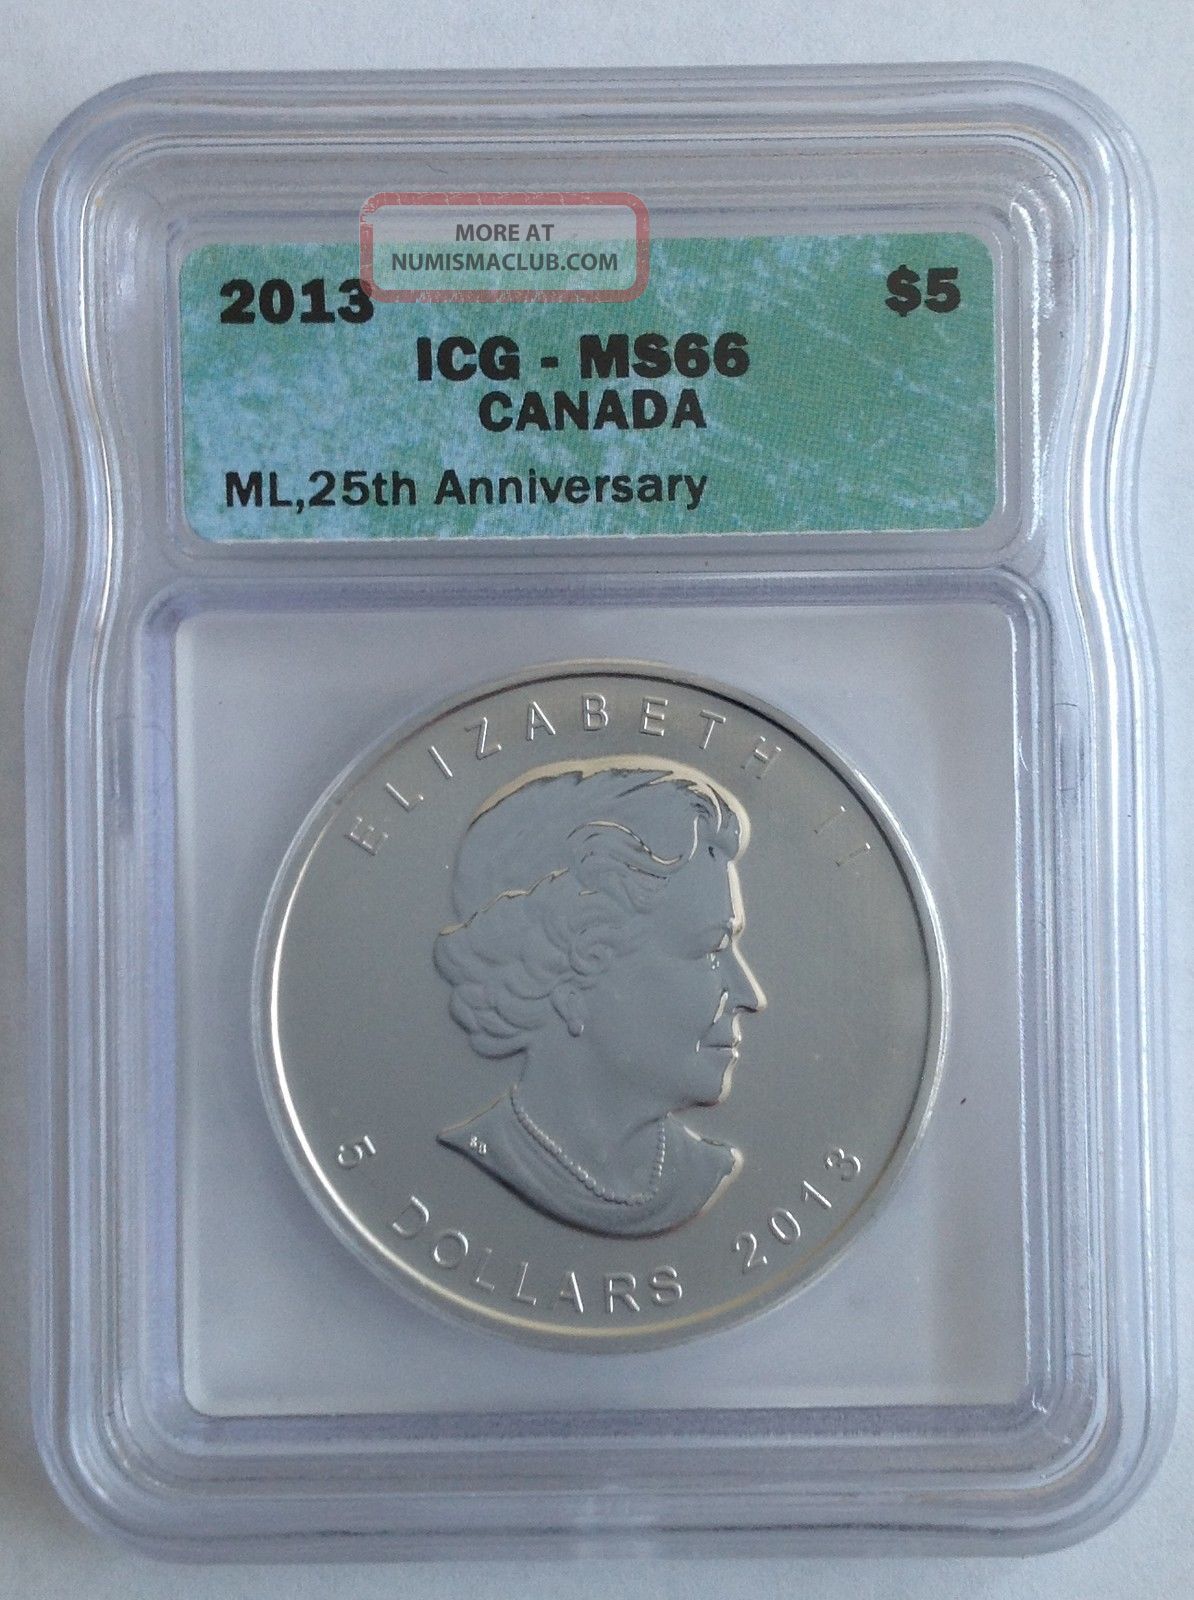 2013 Silver Canada Ml 25th Anniv Coin